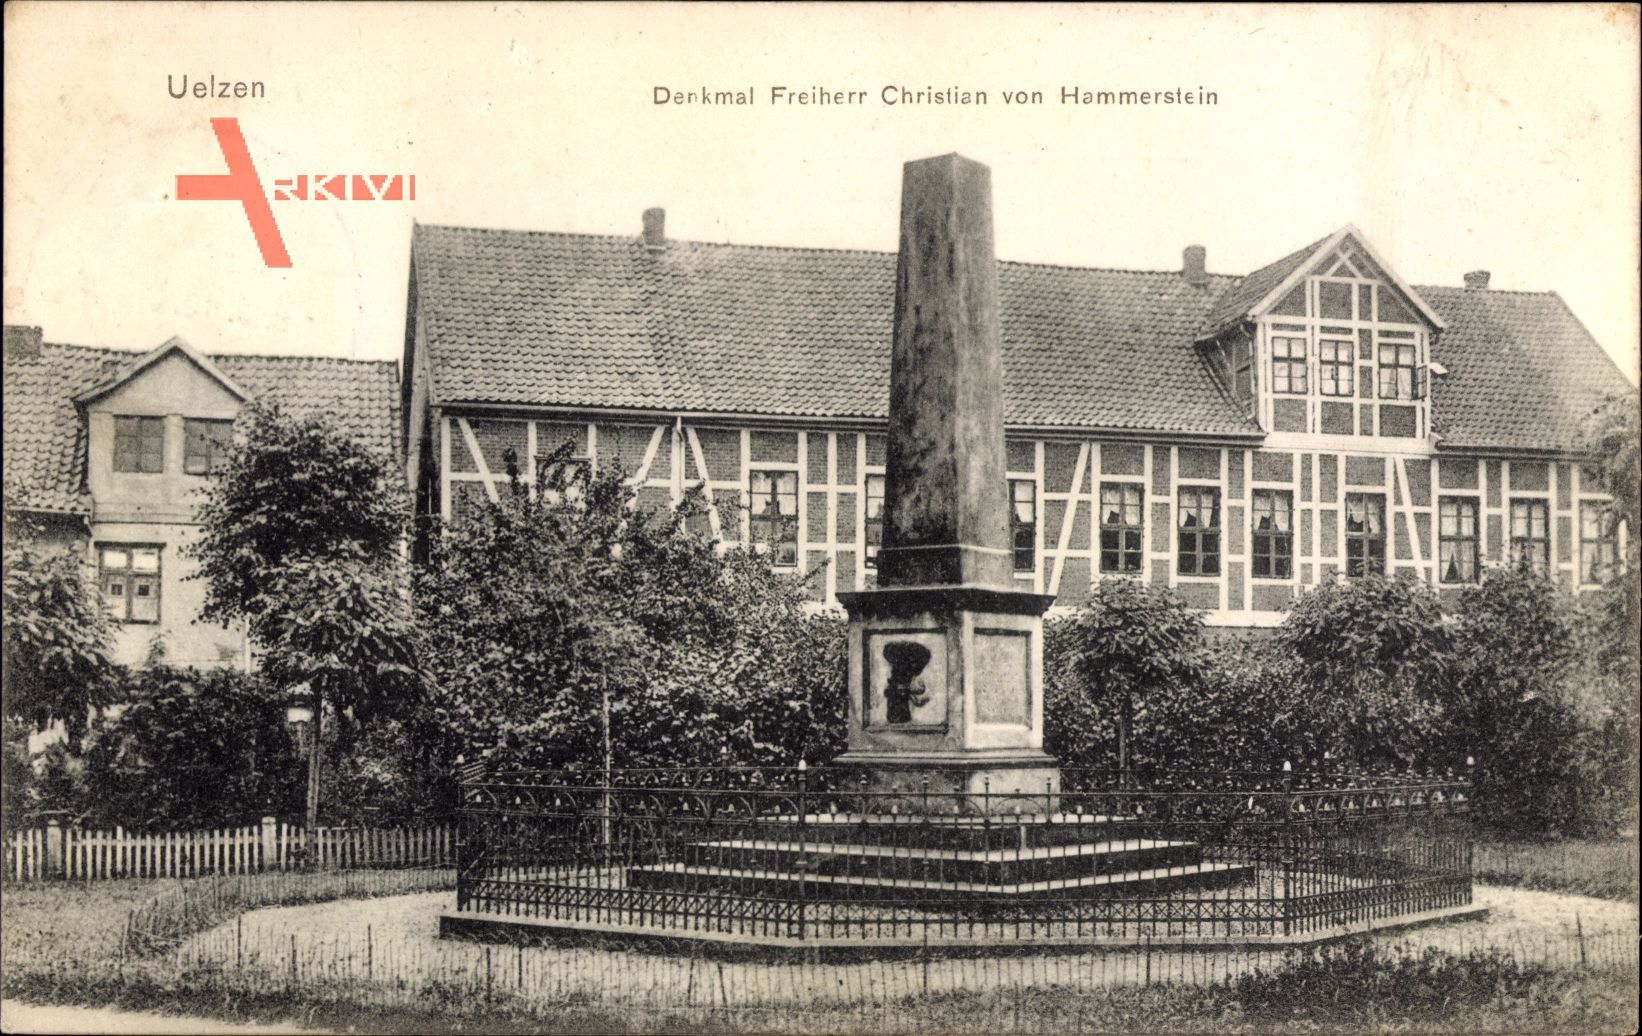 Uelzen in Niedersachsen, Denkmal Freiherr Christian von Hammerstein